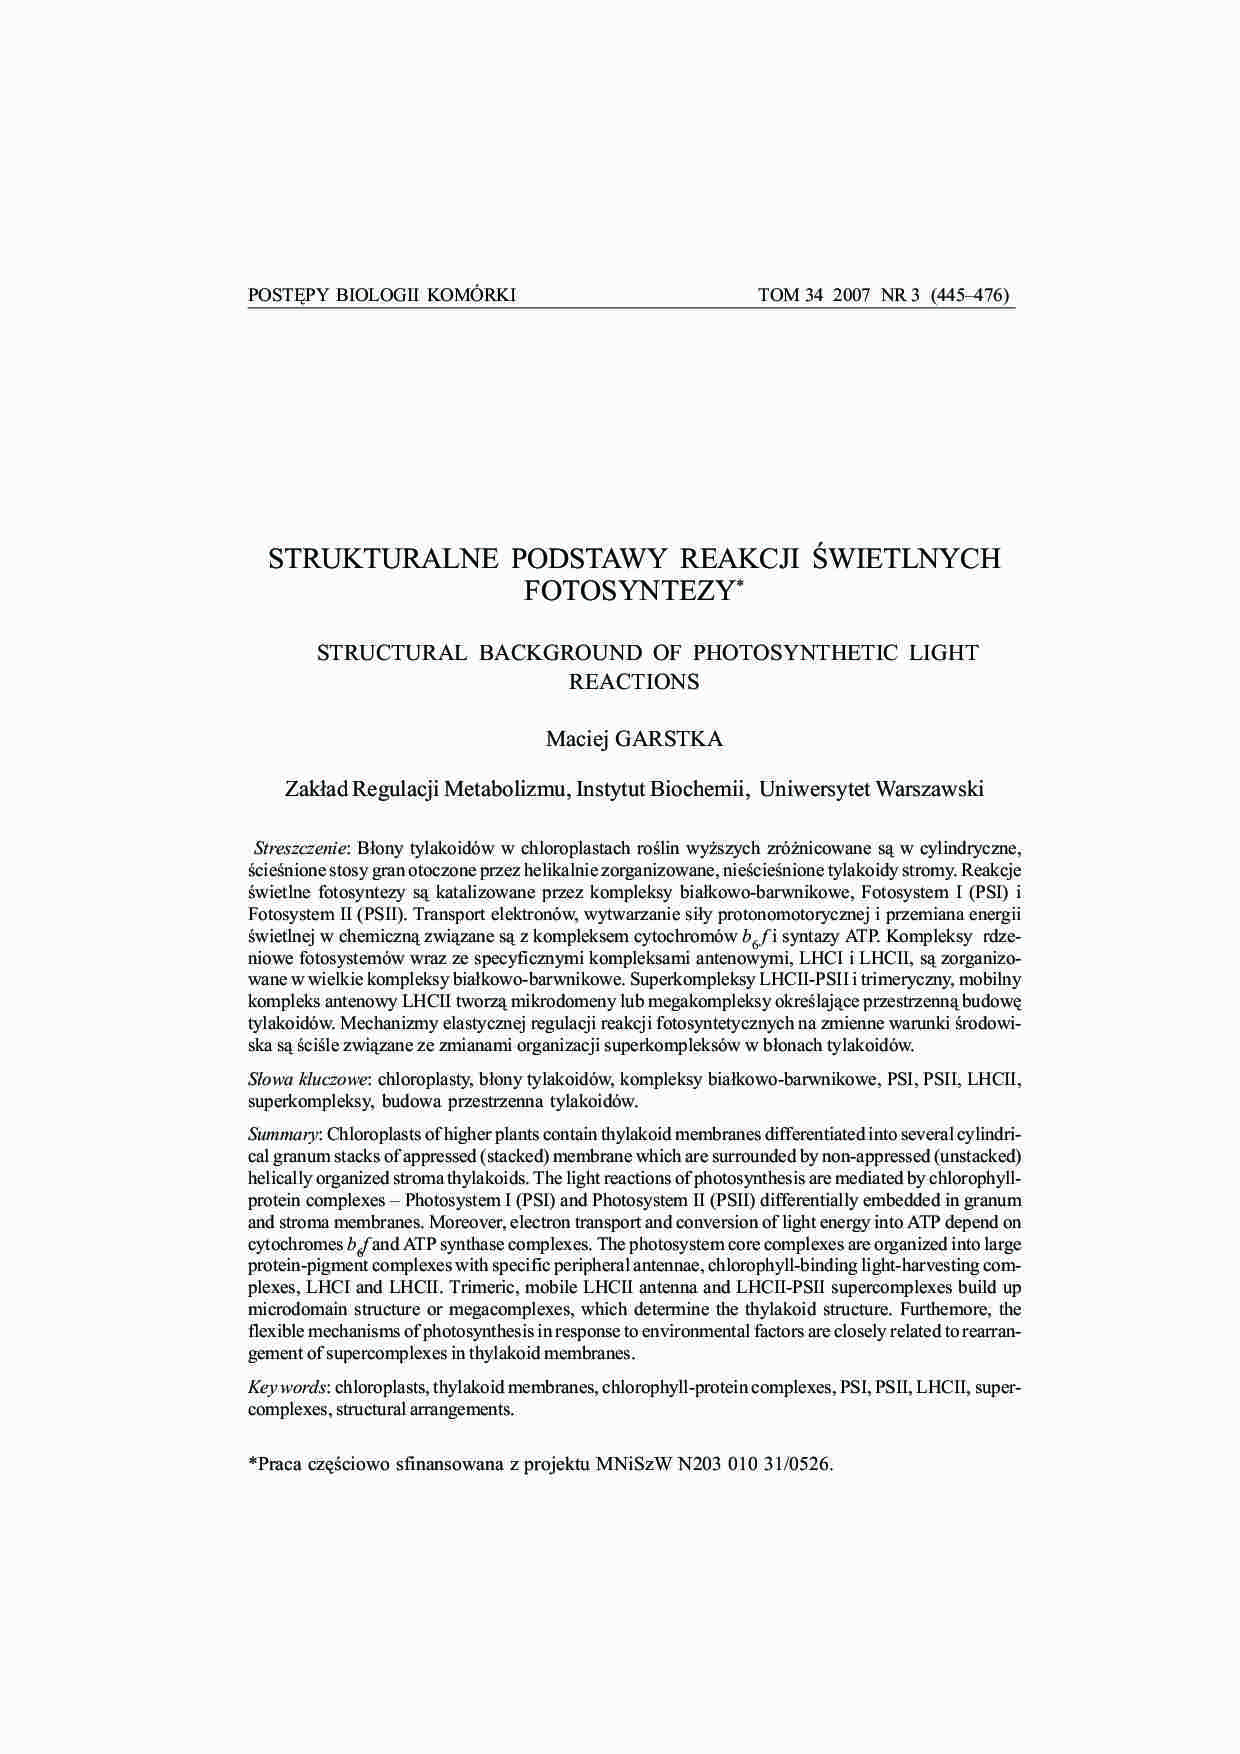 Strukturalne podstawy reakcji świetlnych fotosyntezy-opracowanie - strona 1